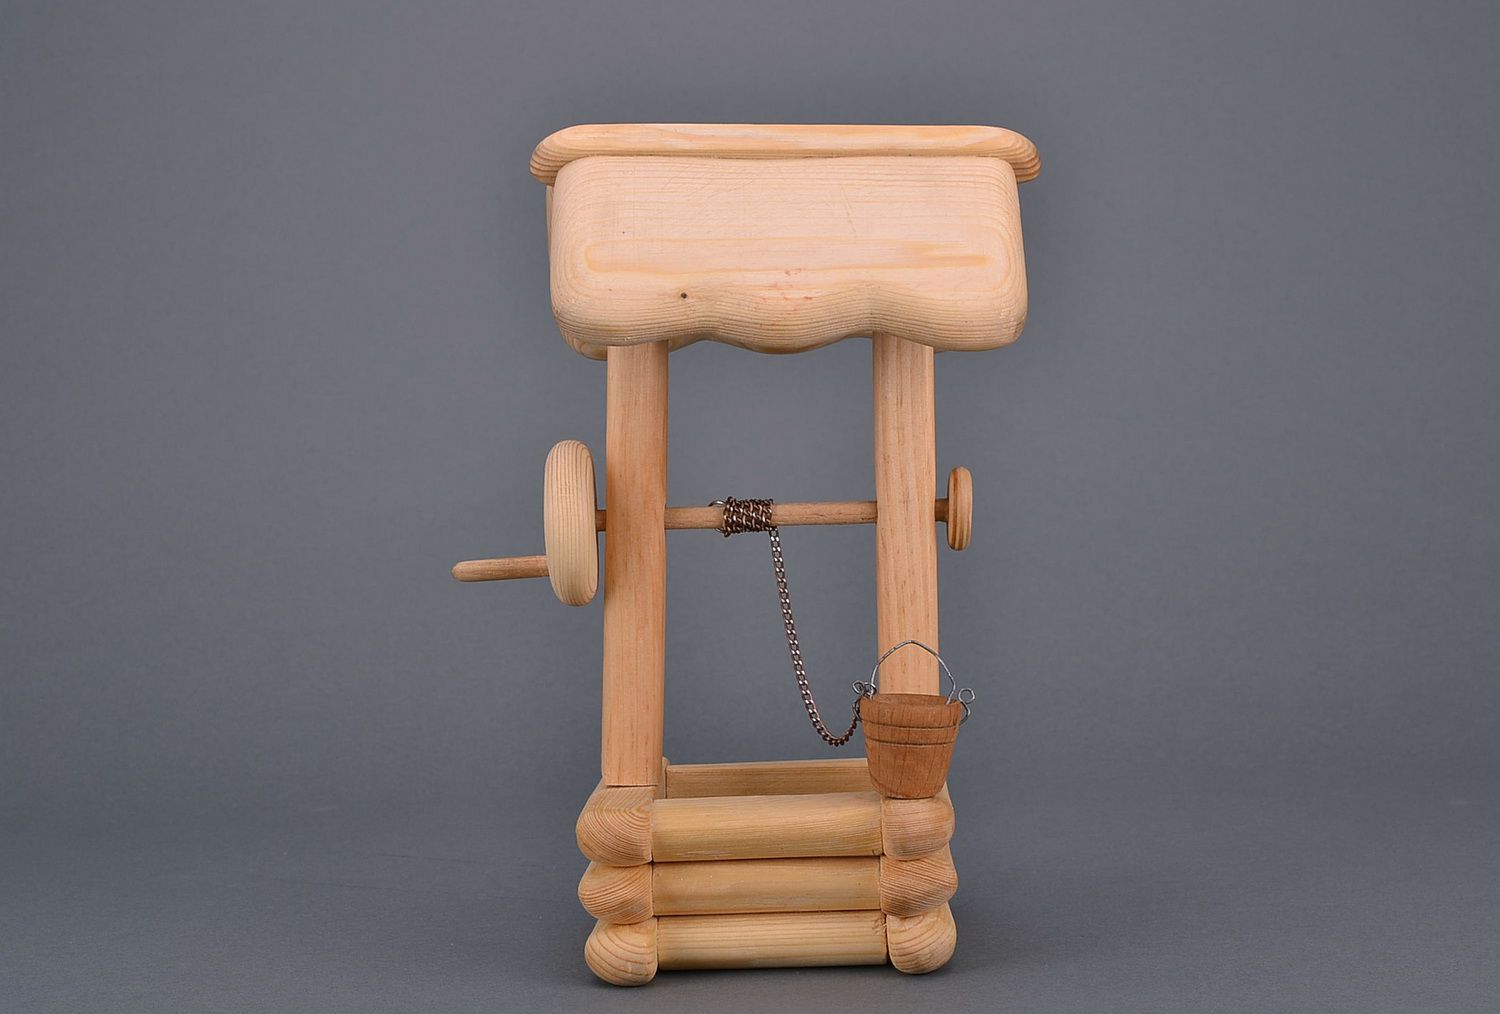 La figurilla de madera en forma de pozo de juguete foto 3